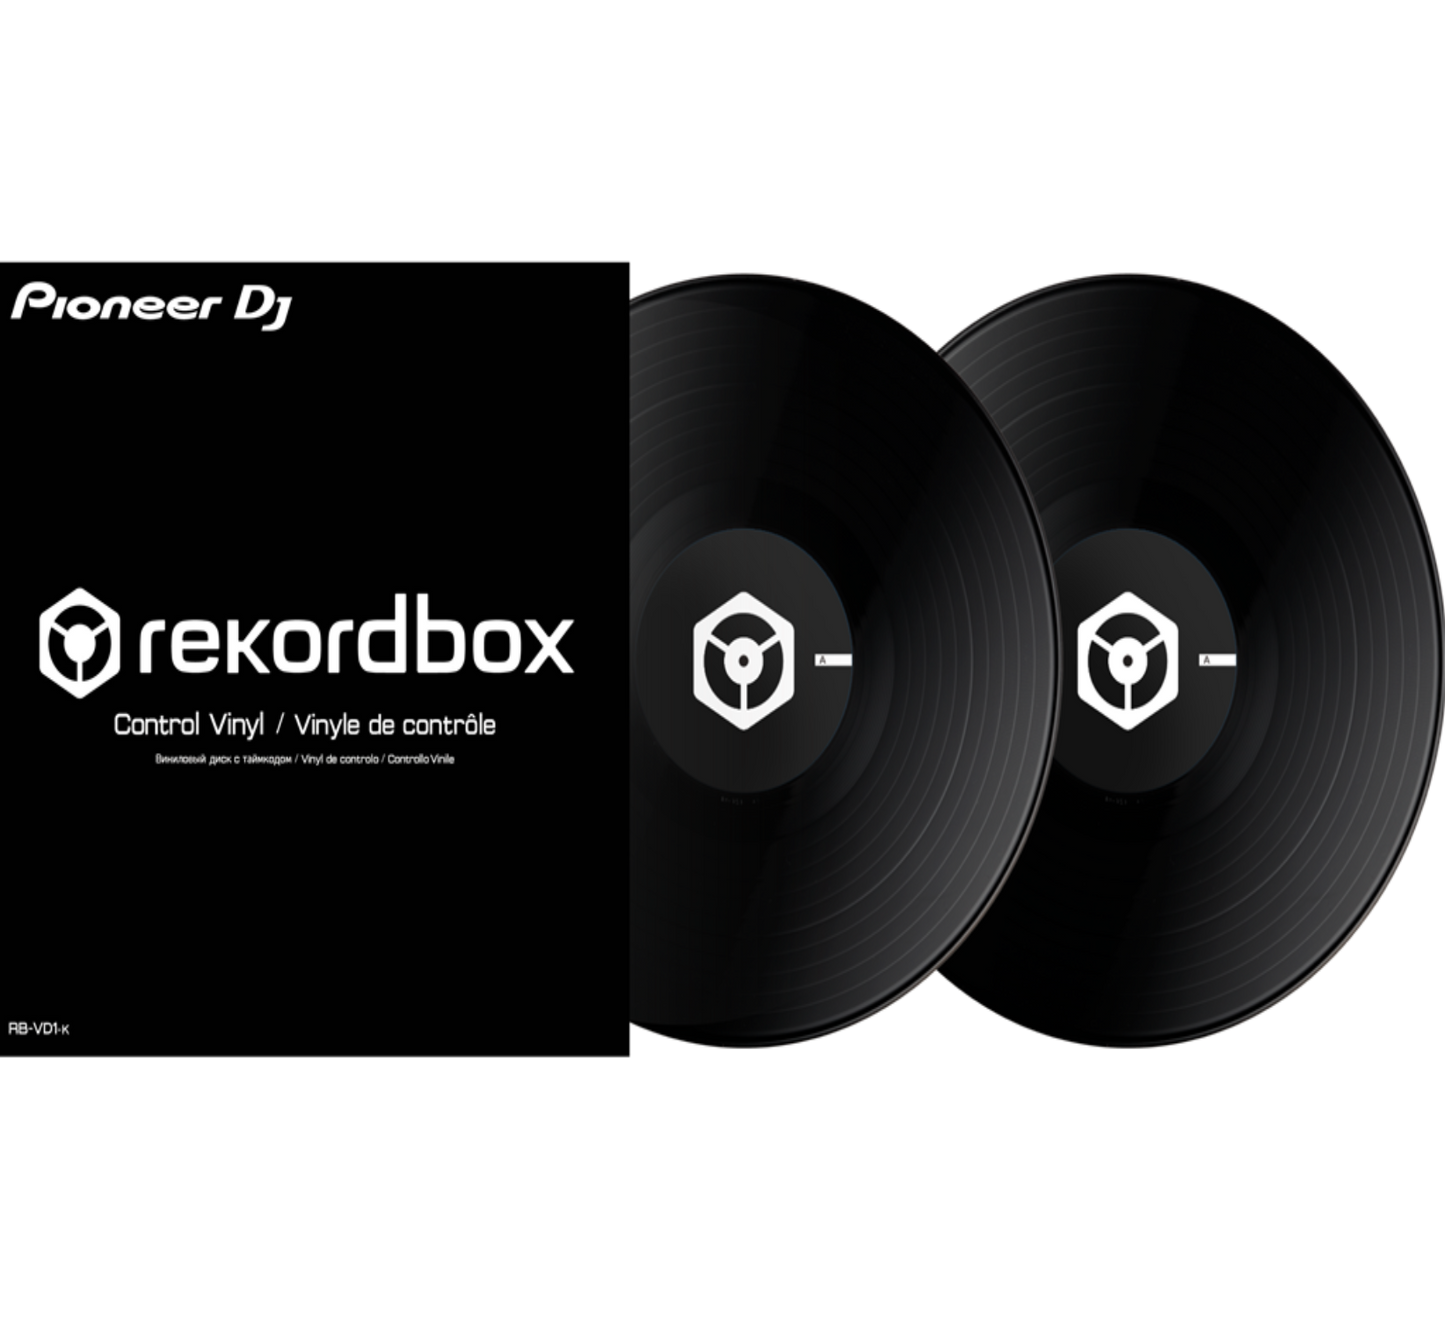 PIONEER DJ RB-VD1-K